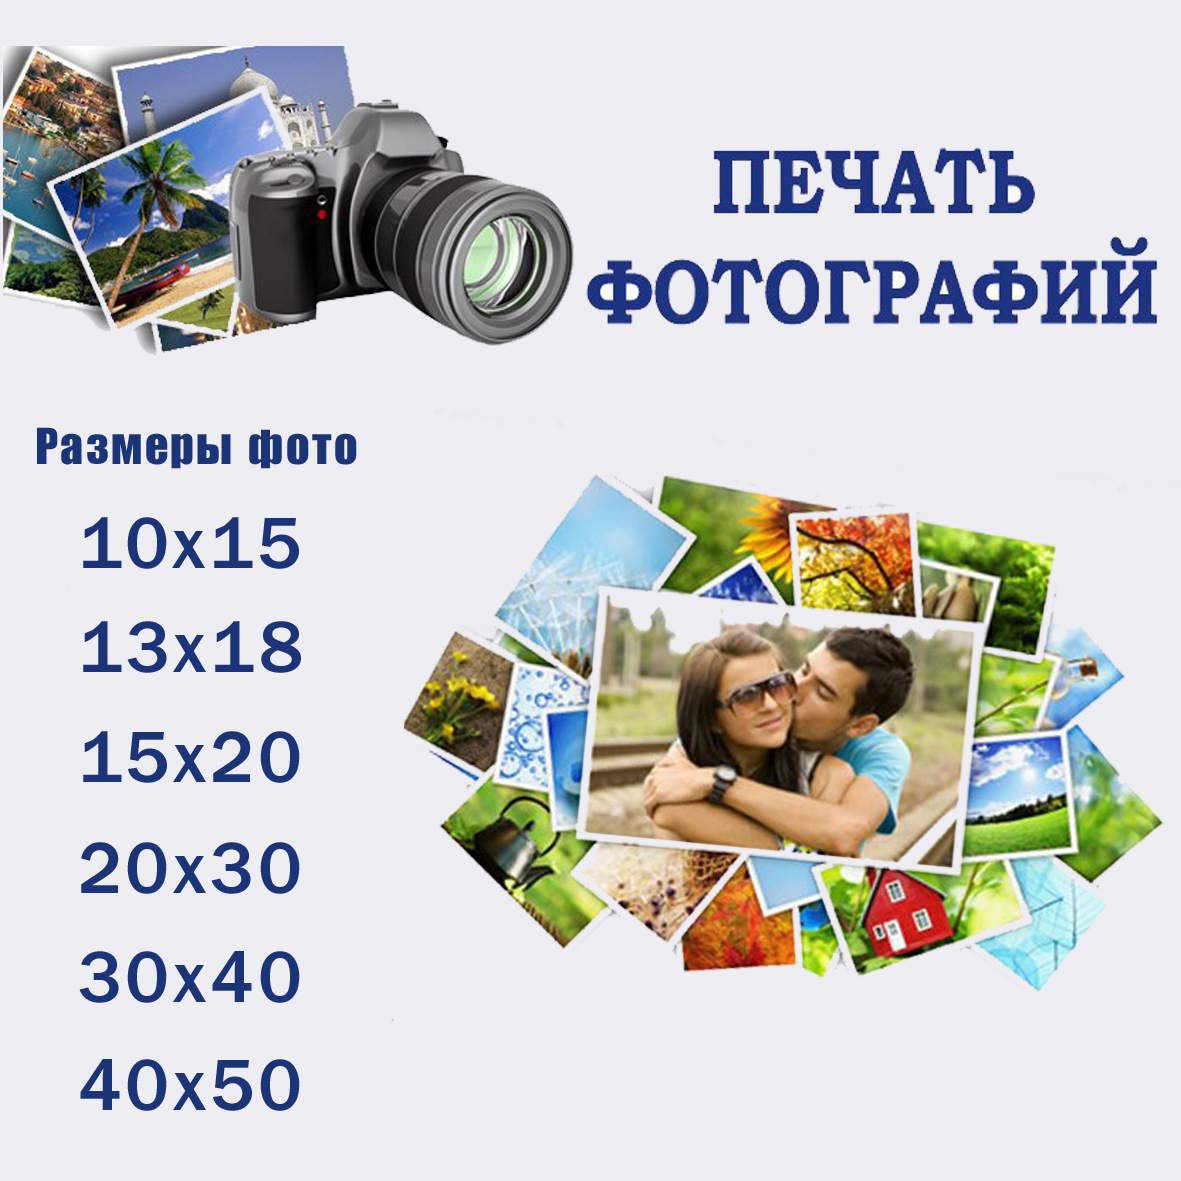 печать фотографий 10х15 через интернет москва